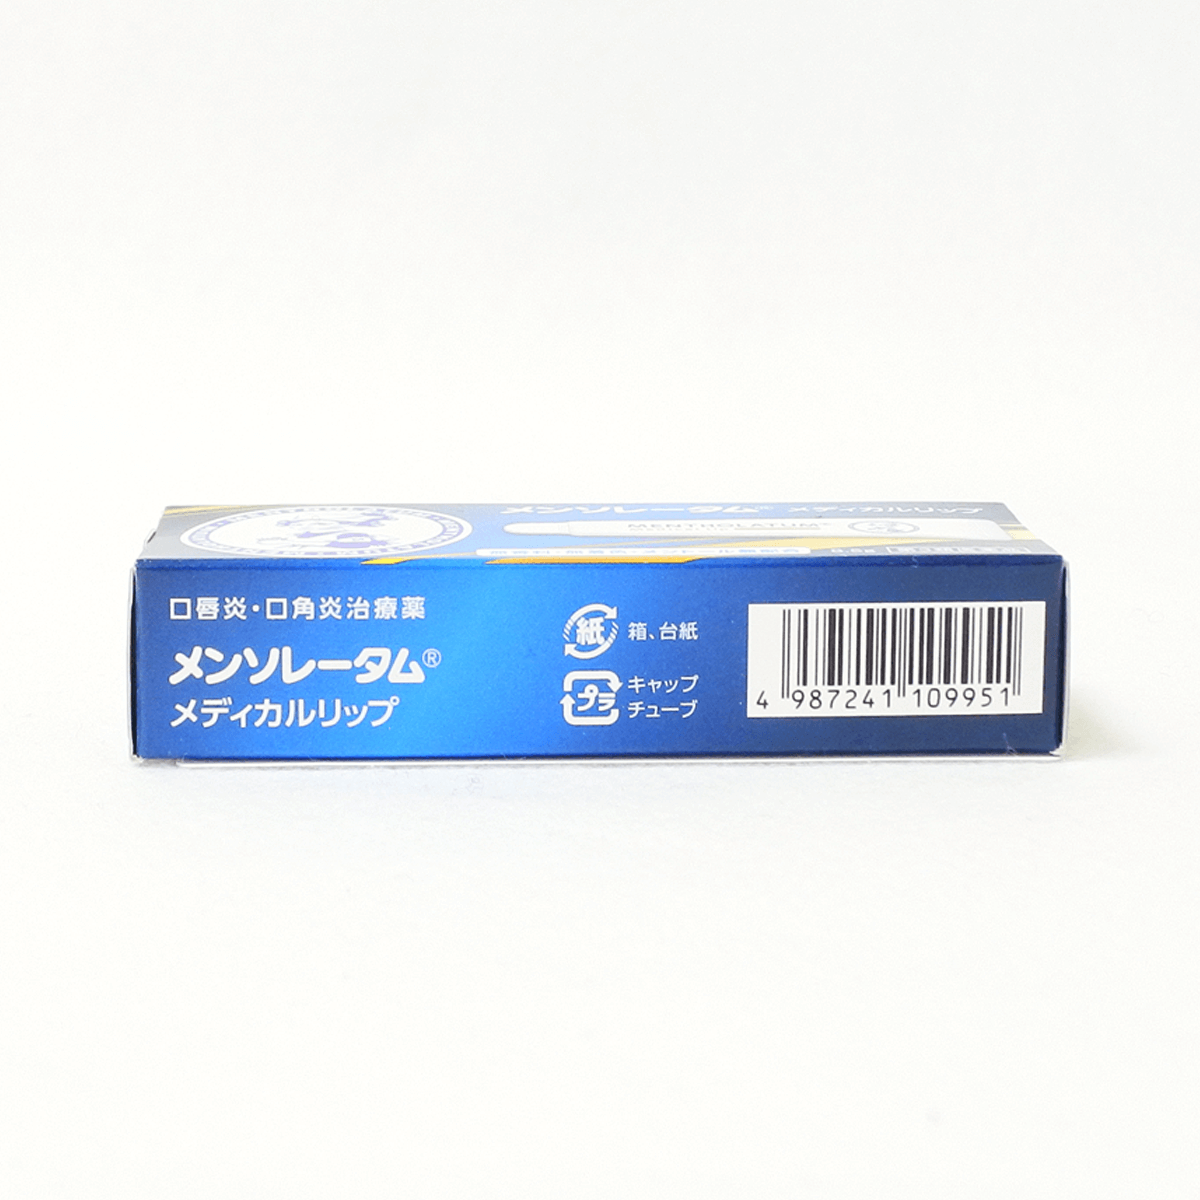 【第3类医药品】乐敦 曼秀雷敦 药用唇膏 8.5g